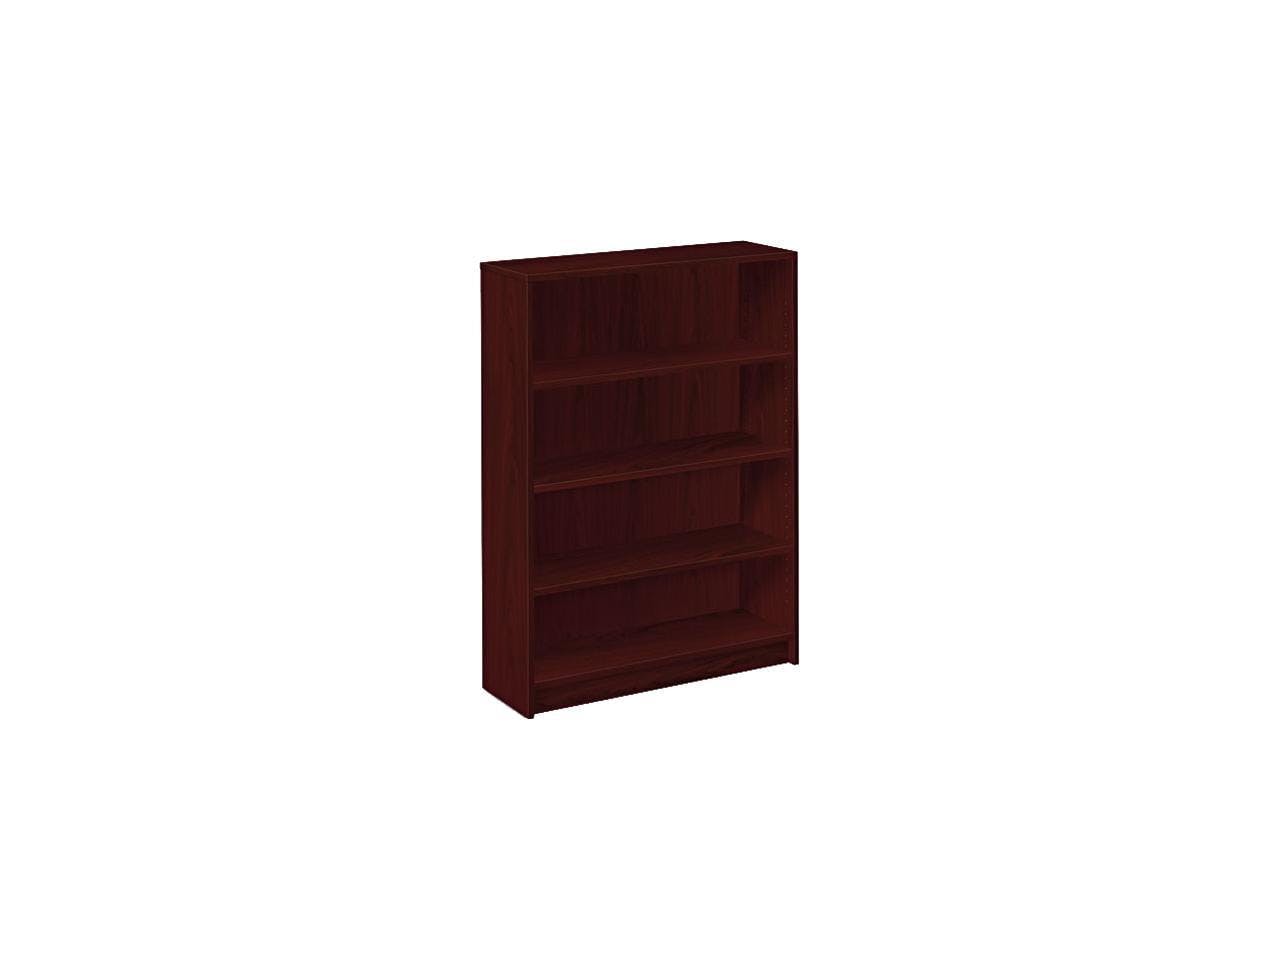 Adjustable Mahogany Laminate 4-Shelf Bookcase